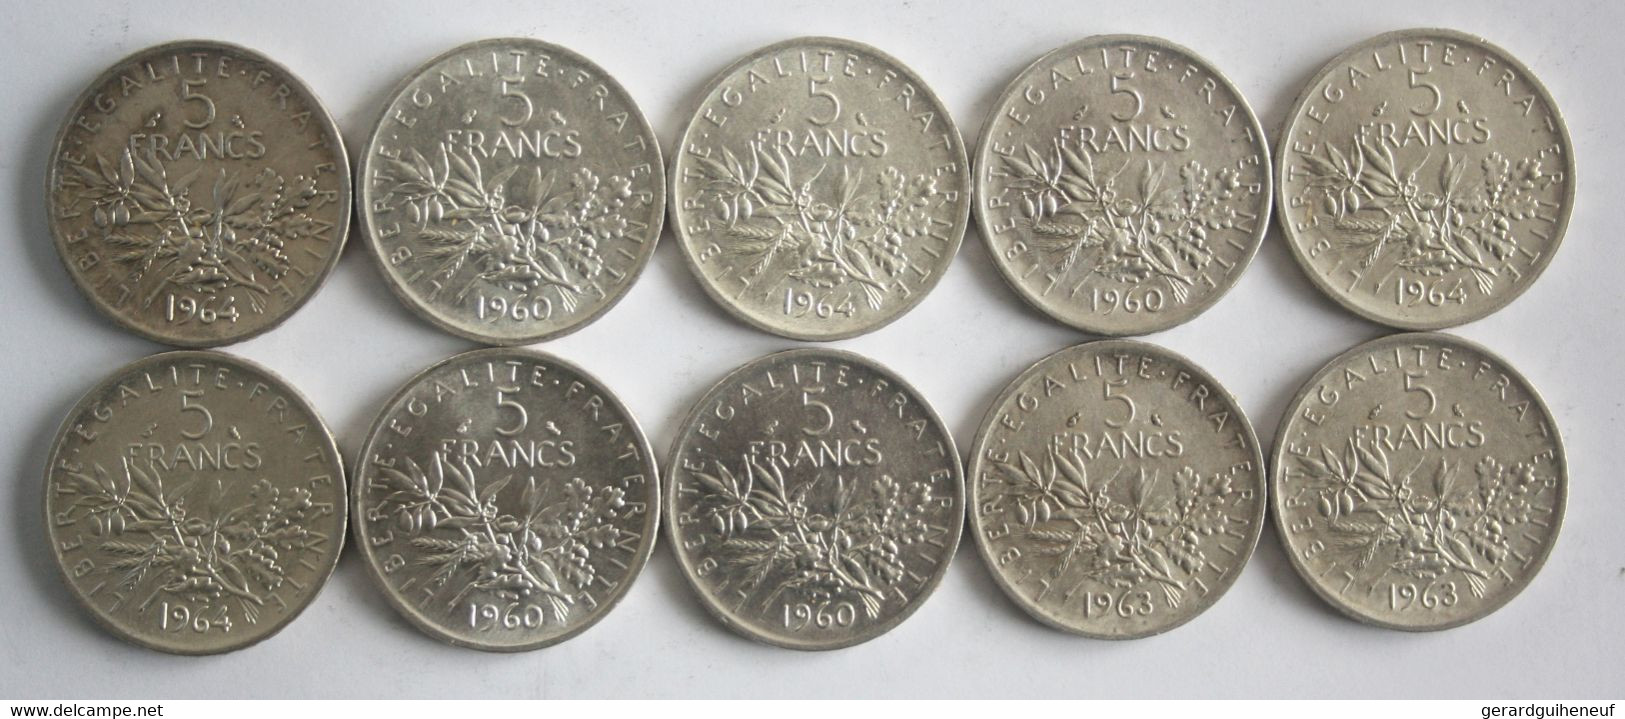 20 Monnaies 2 Francs Et 5 Francs Semeuse ARGENT - Alla Rinfusa - Monete